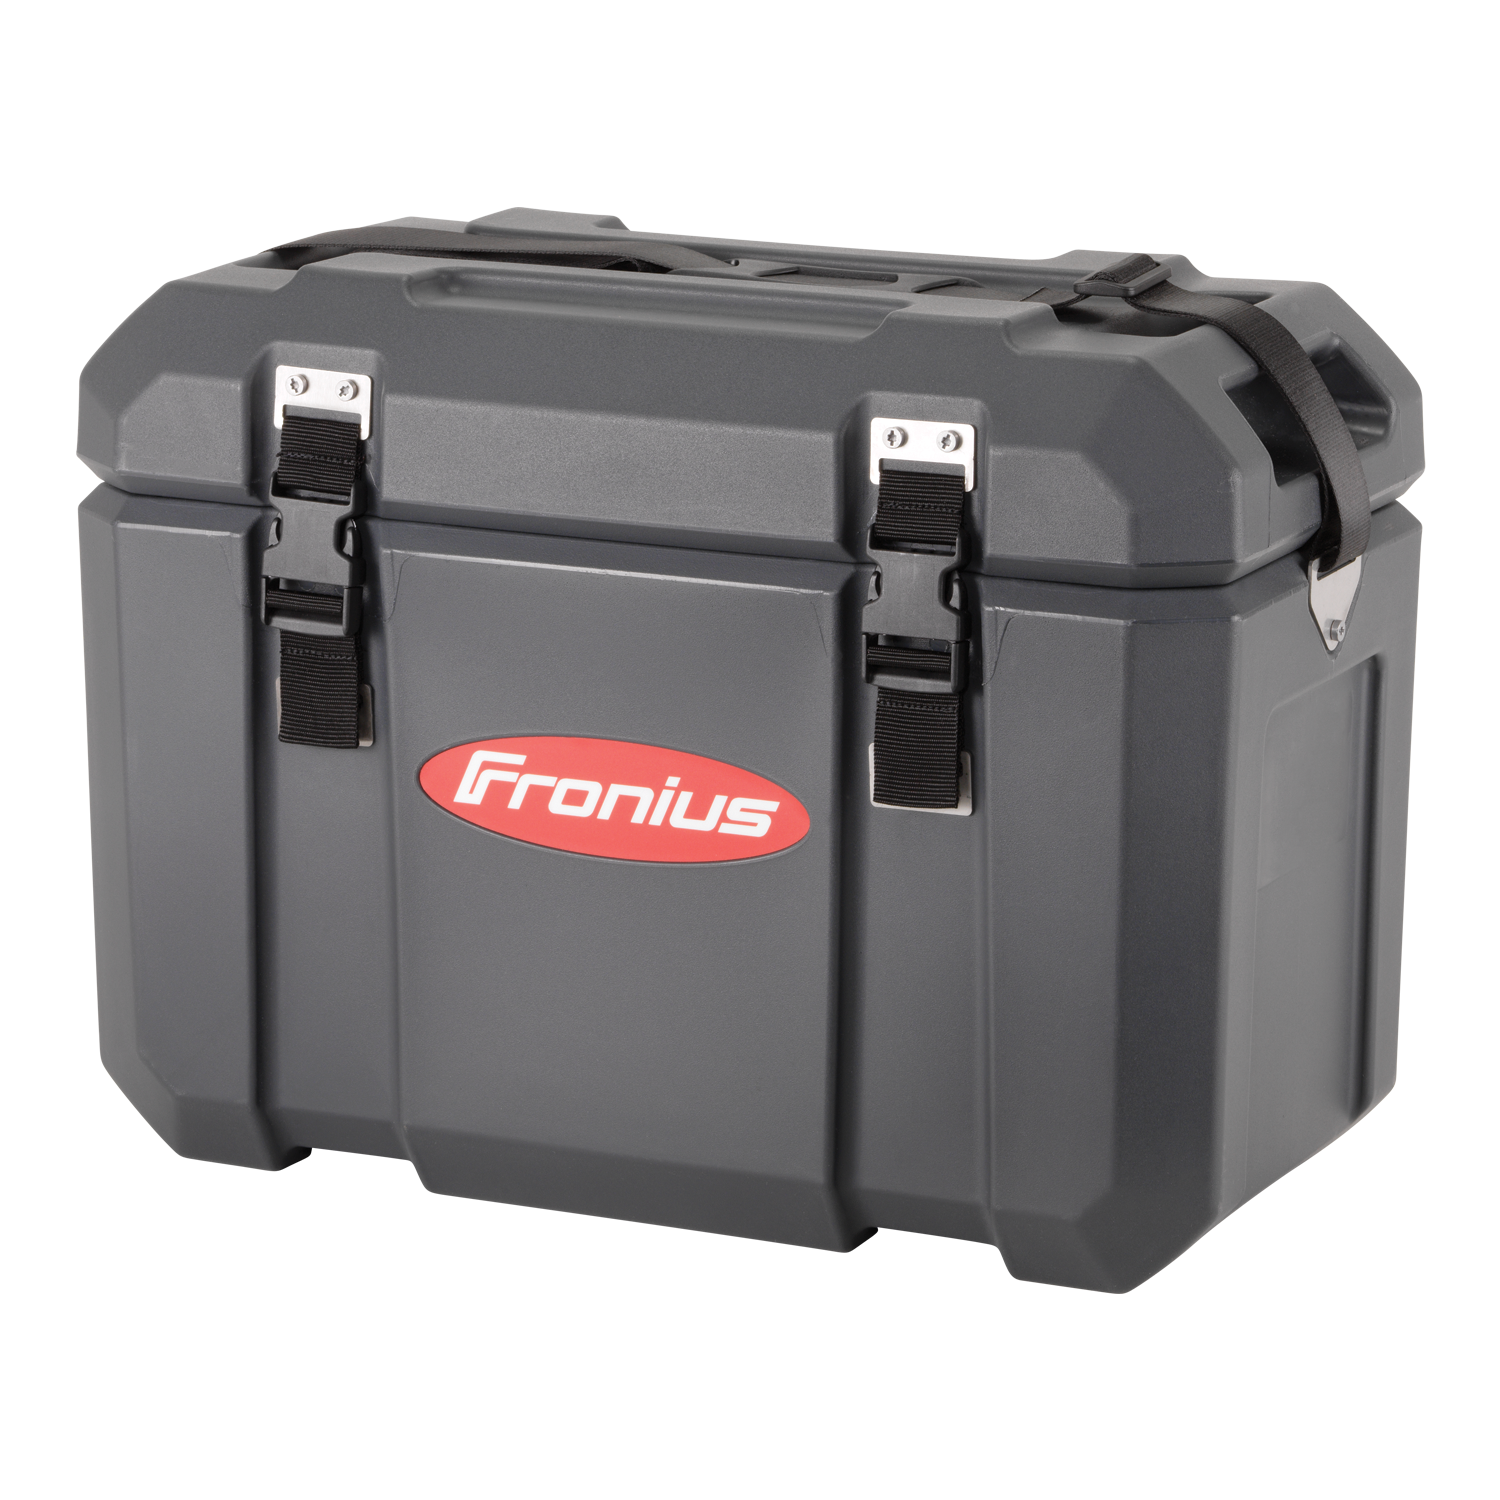 Fronius Tool Case 60 